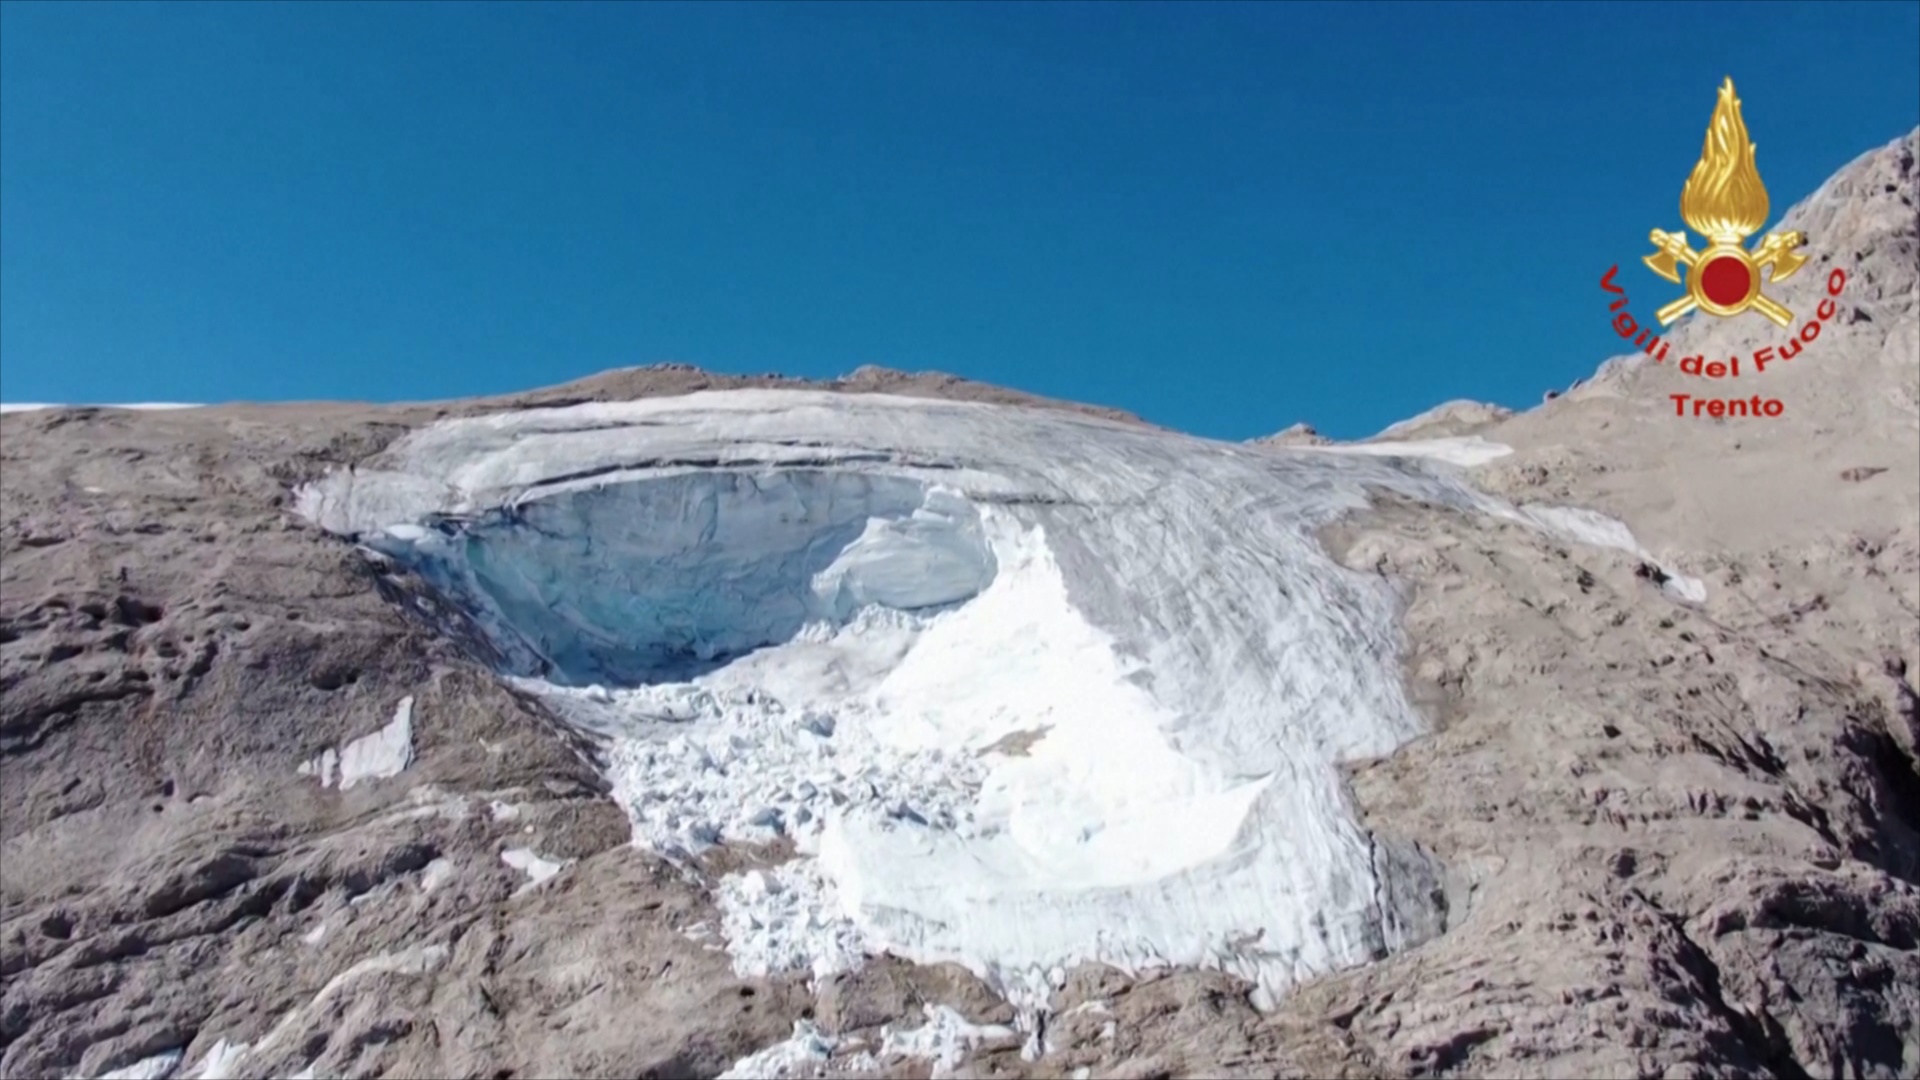 Аэросъёмка показала место схода ледника в Альпах, где погибли не менее 10 человек